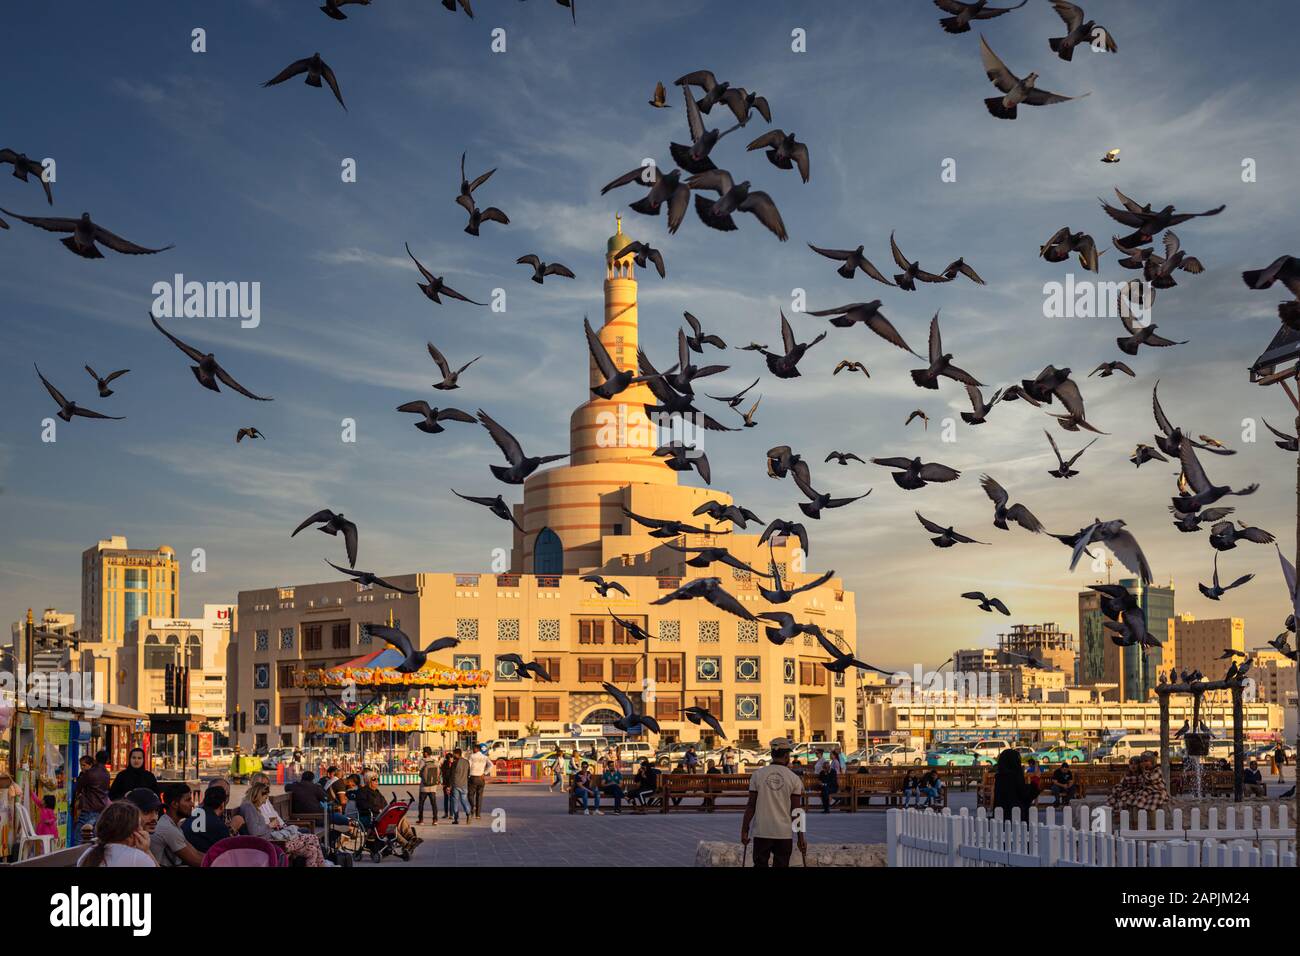 Doha, Qatar-21 janvier 2020: Centre culturel islamique Al-Fanar Qatar vue de jour avec des pigeons volant dans le ciel en premier plan et des nuages dans le ciel Banque D'Images